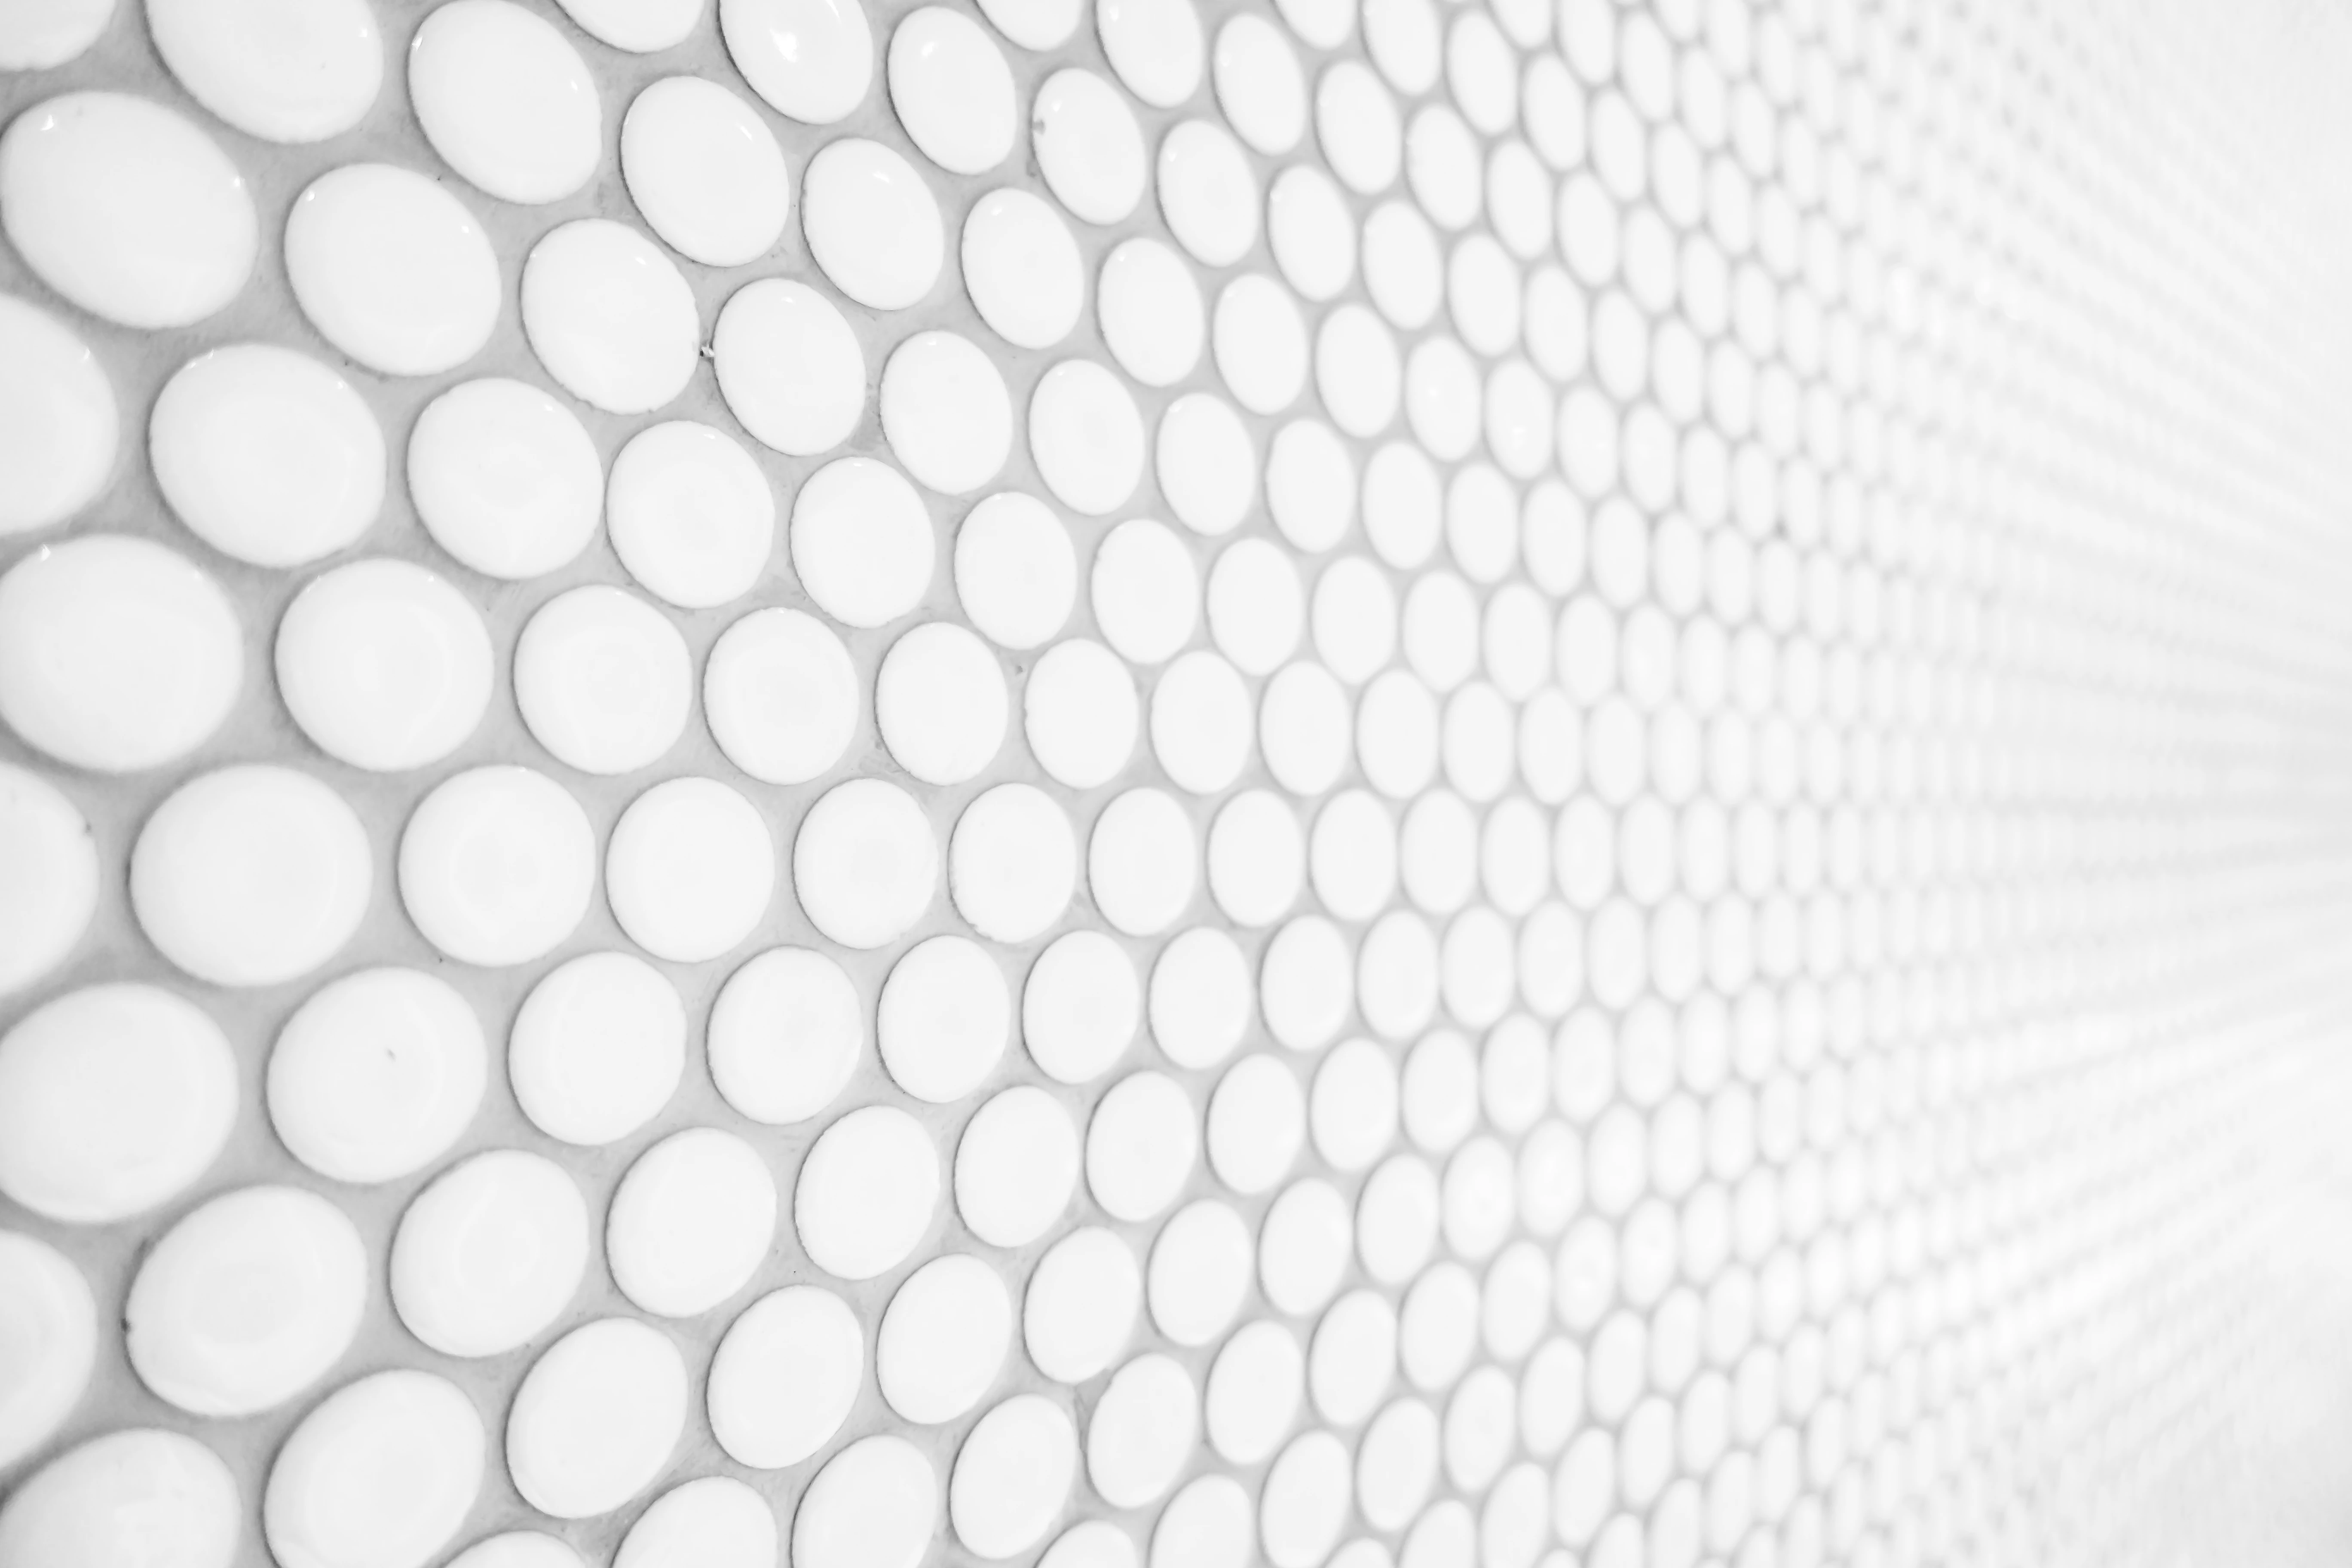 r99-white-tiles-wall-17139025031382.jpg